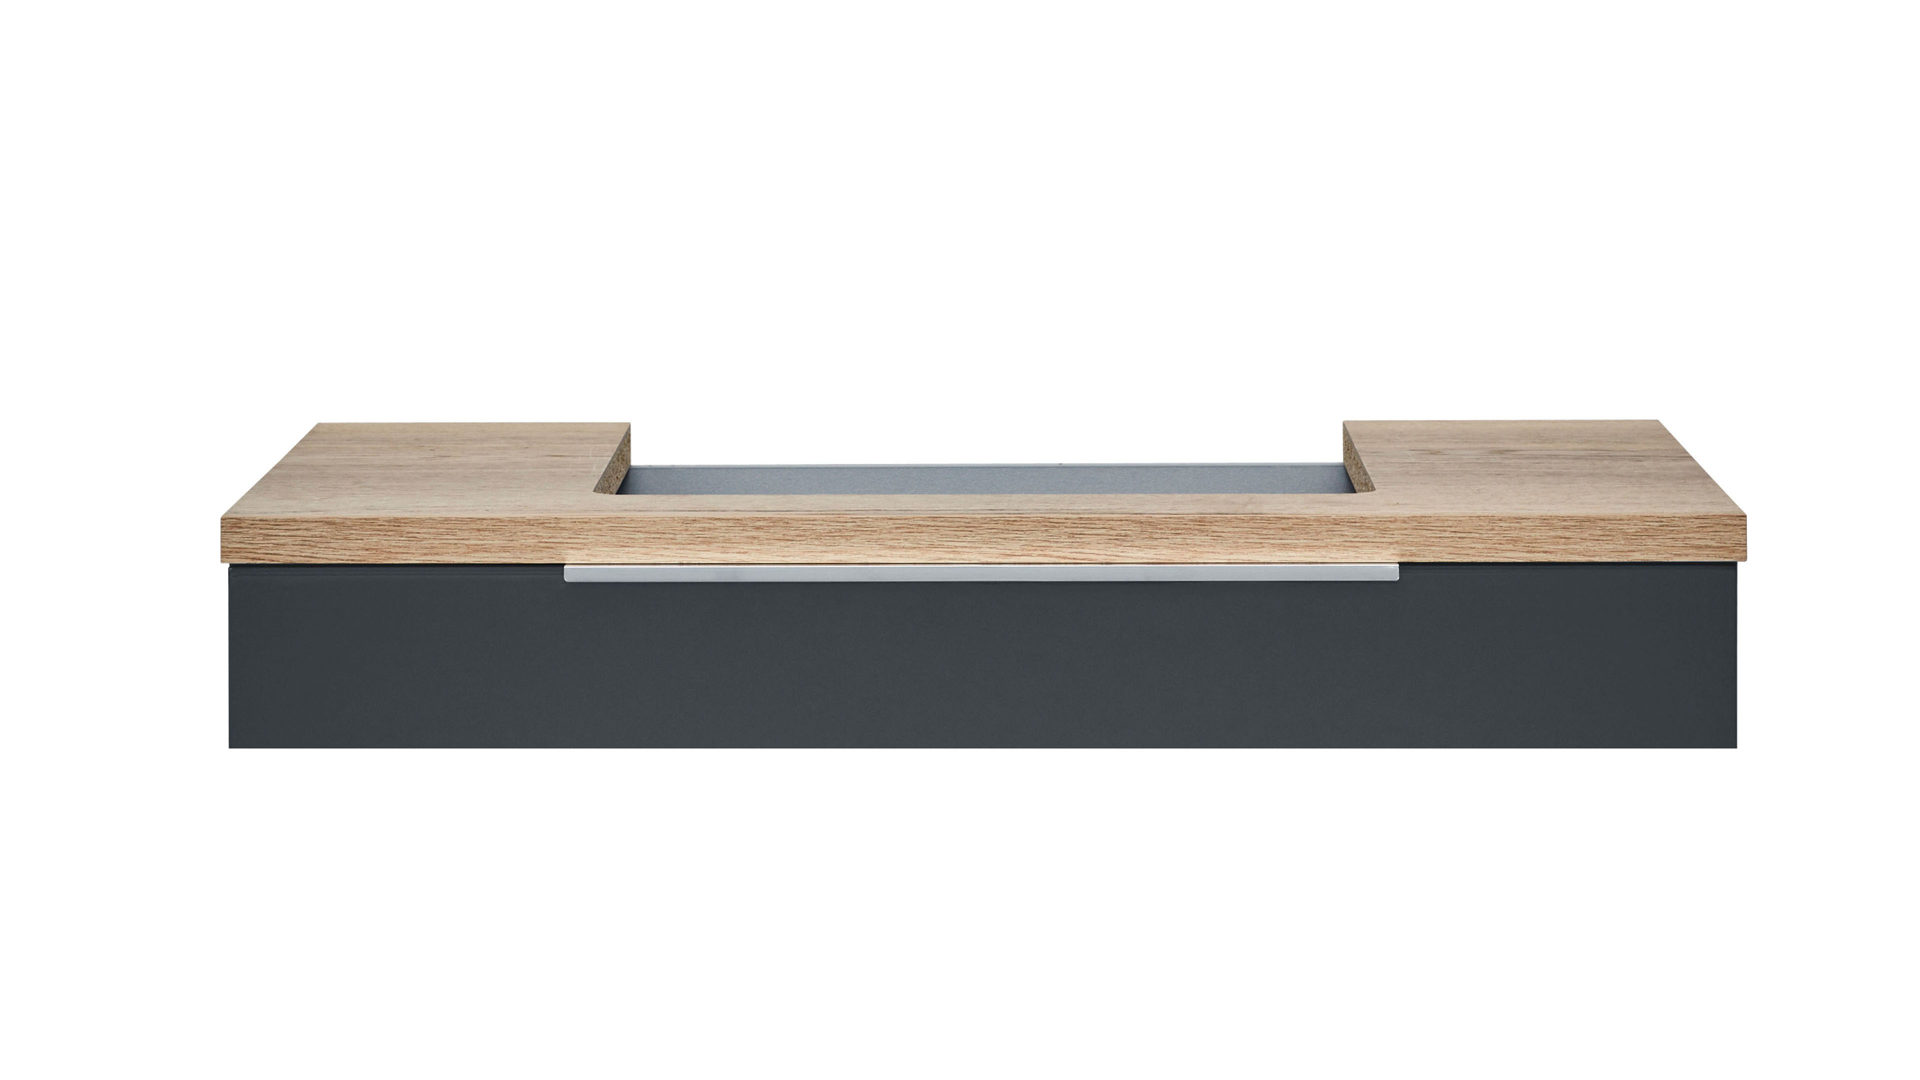 Tischplatte Interliving aus Holz in Holzfarben Interliving Bad Serie 3701 – Waschtischplatte Halifax eichefarbene Kunststoffoberflächen – Länge ca. 91 cm